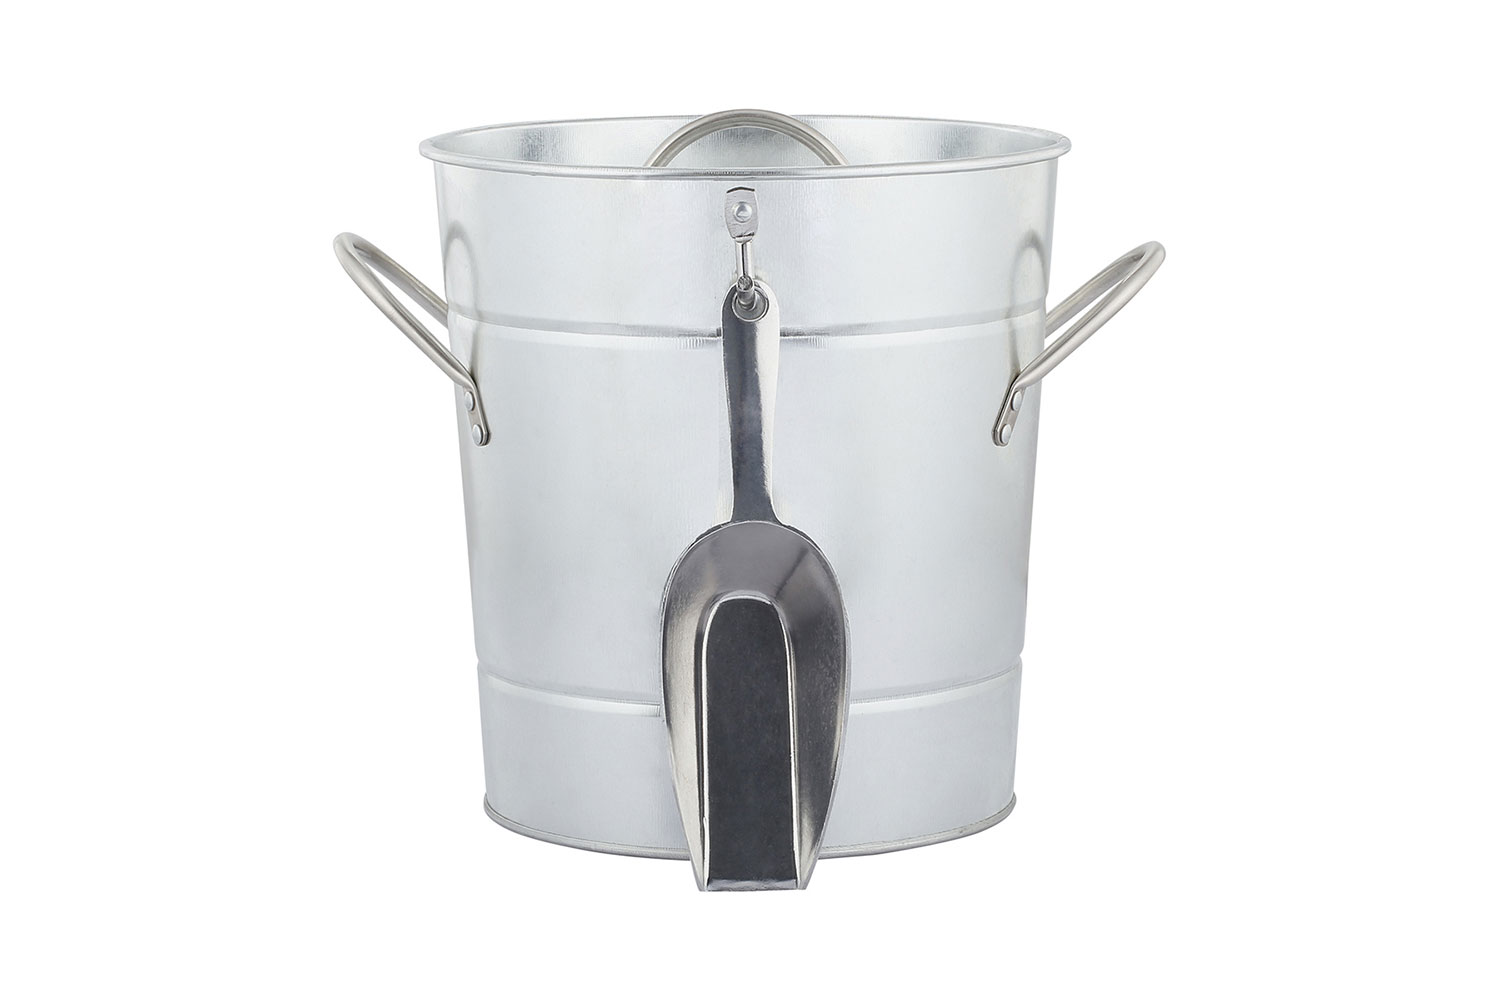 kmart galvanised ice bucket